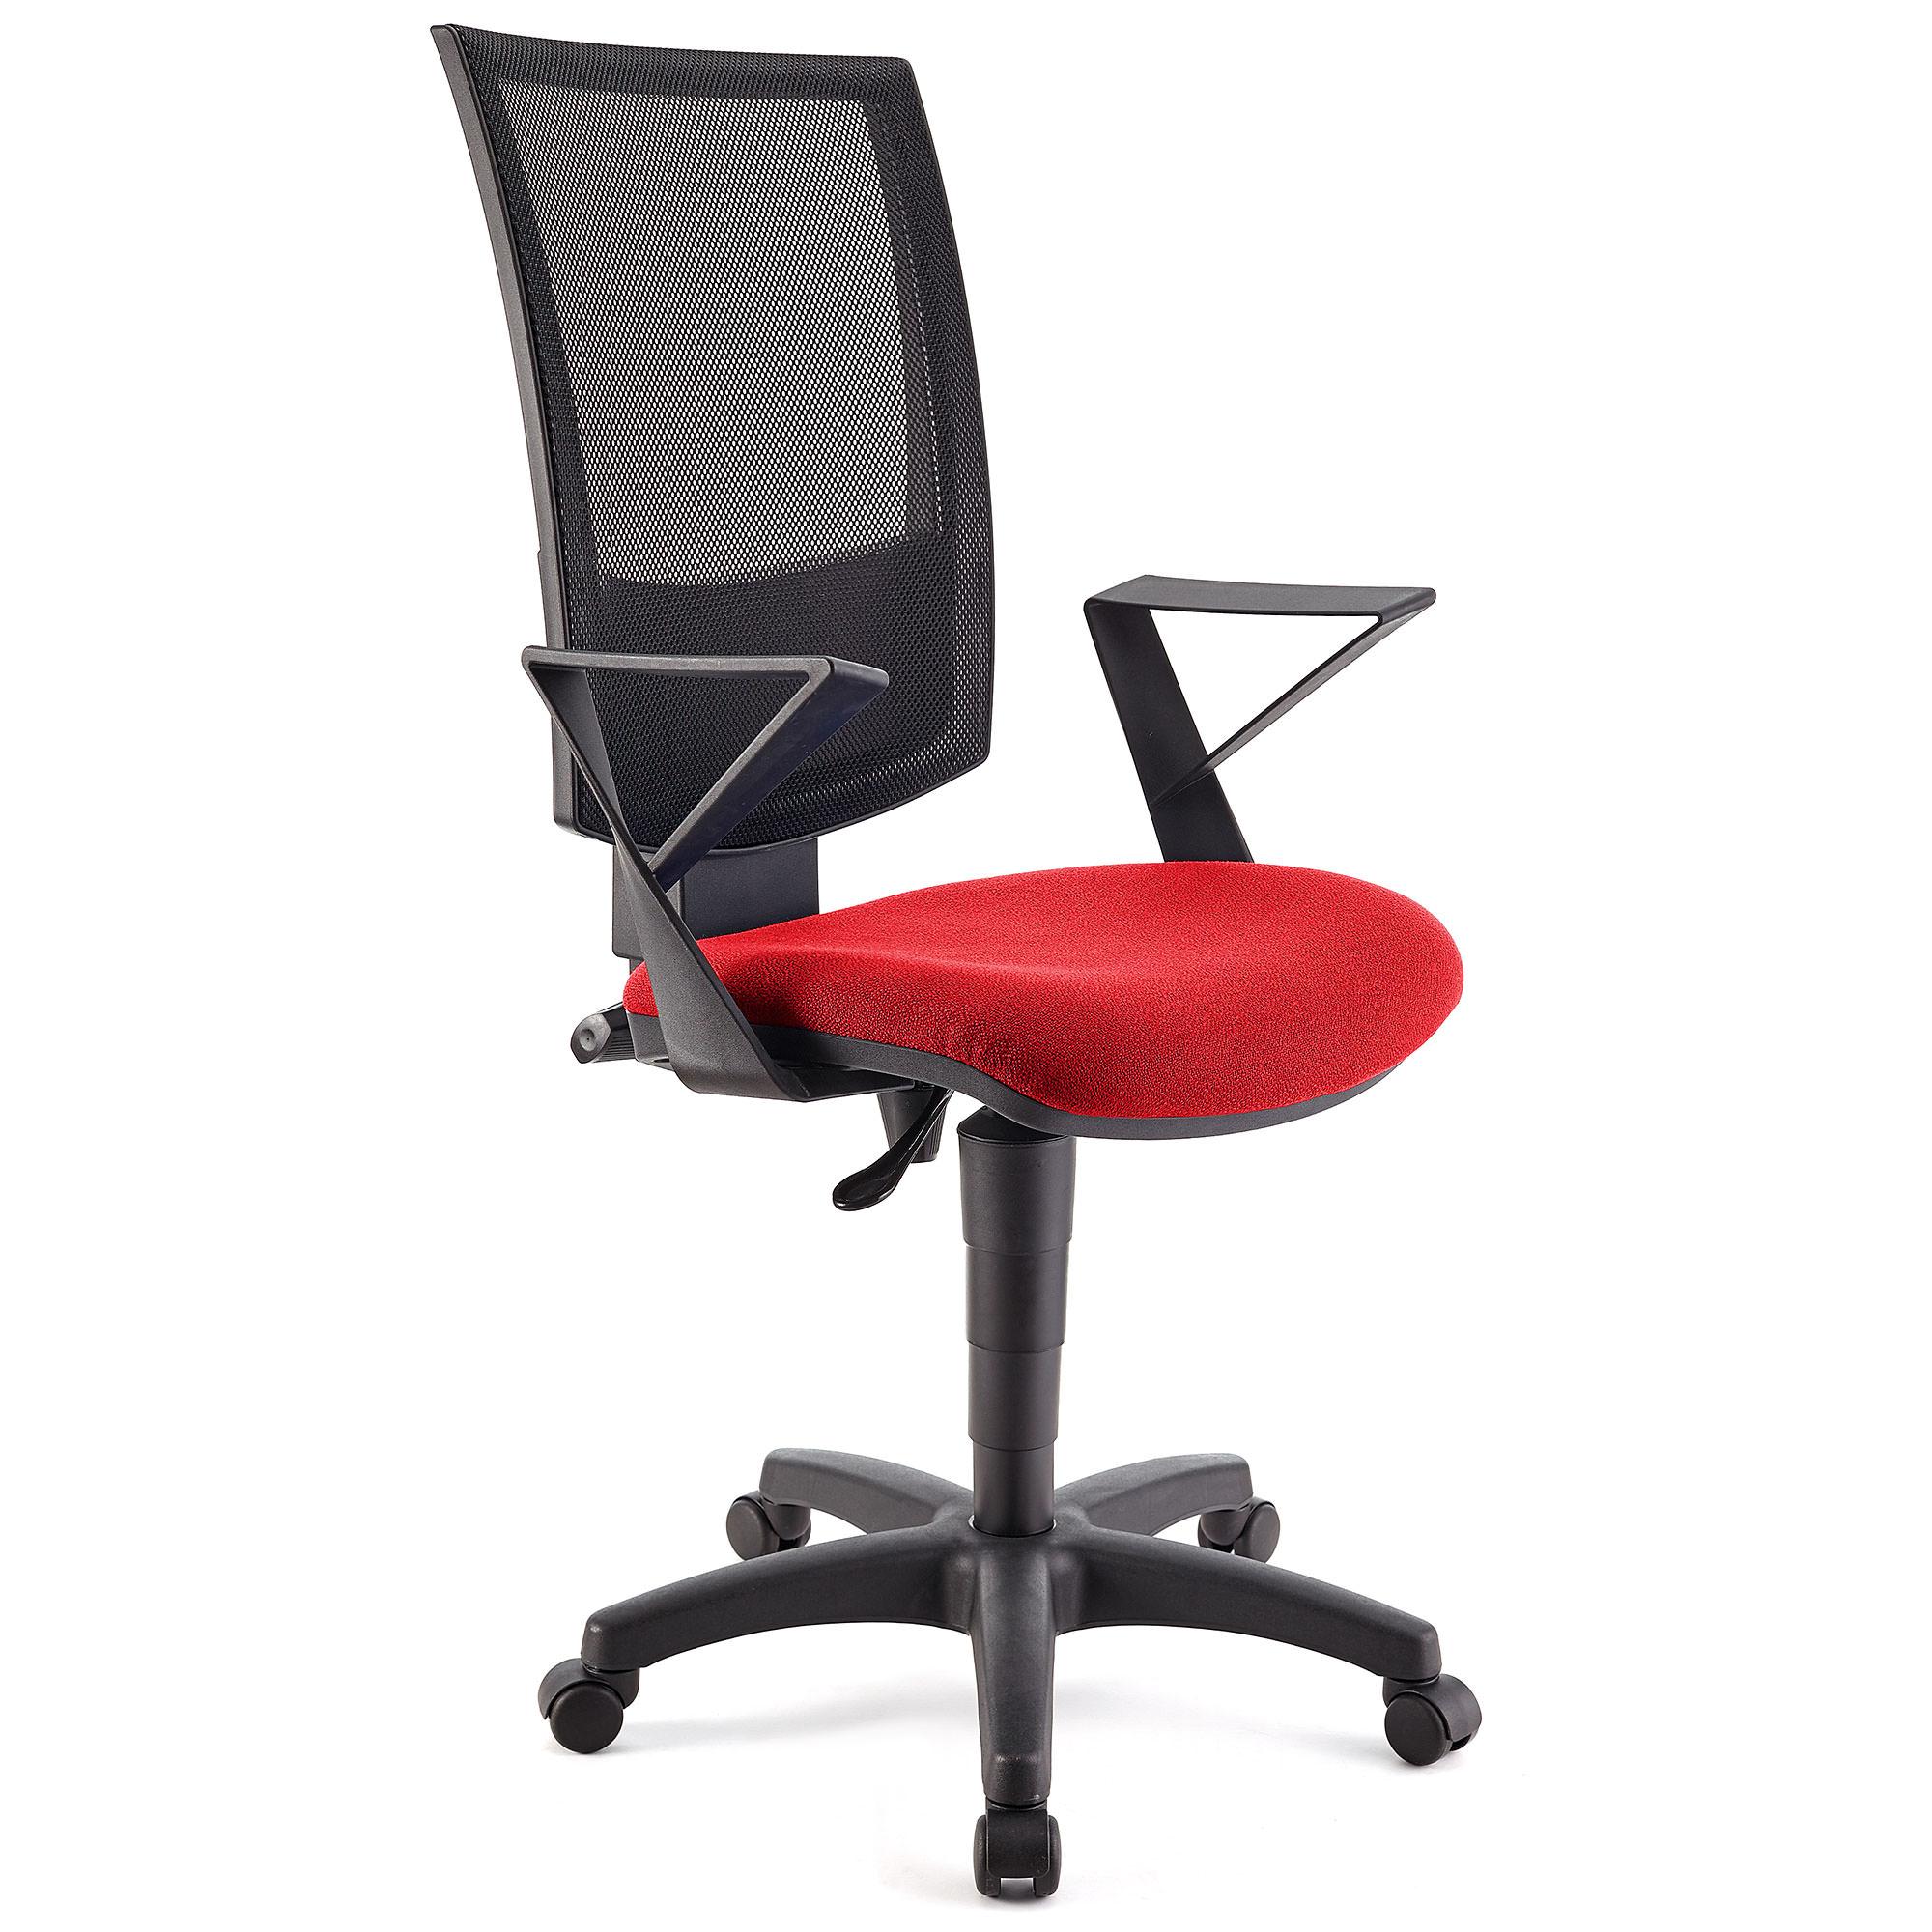 Bürostuhl PANDORA mit Armlehnen, Rückenlehne mit Netzbezug, dicke Polsterung, Farbe Rot